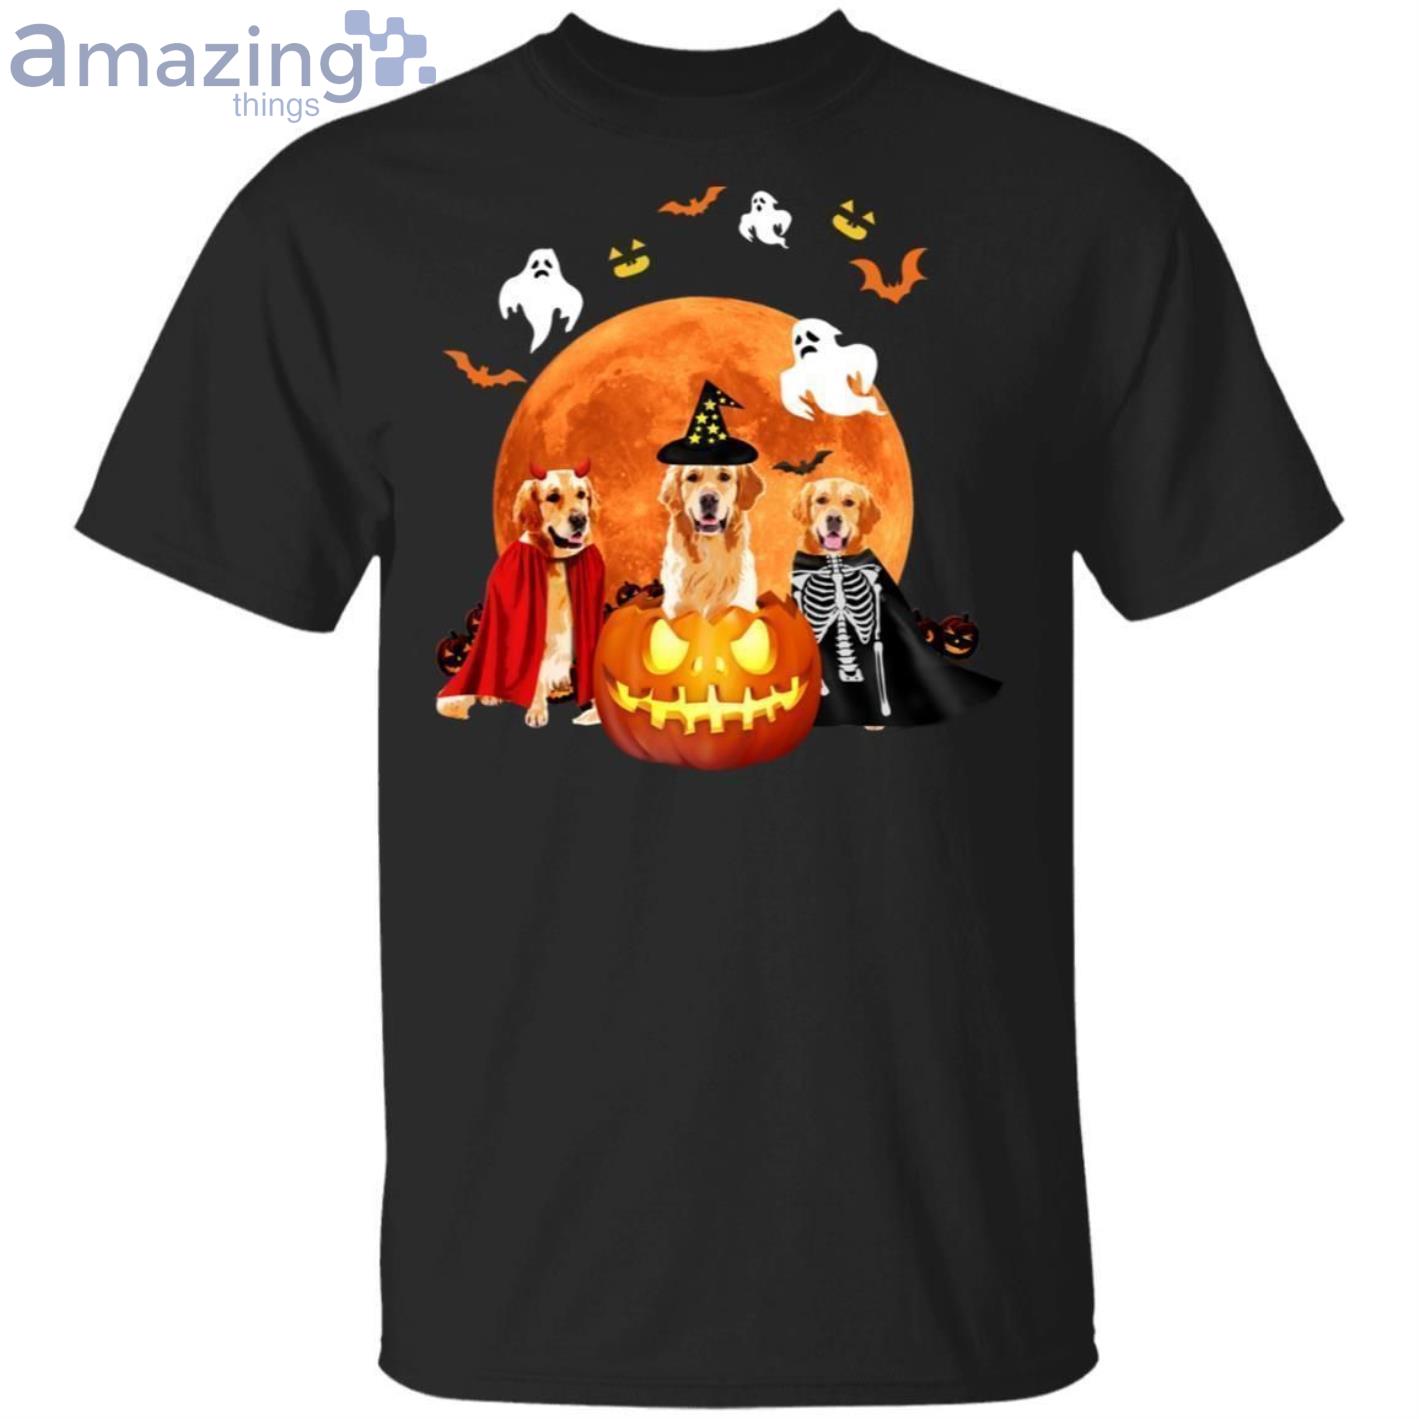 Three Golden Retrievers And A Pumpkin Halloween T-Shirt Product Photo 1